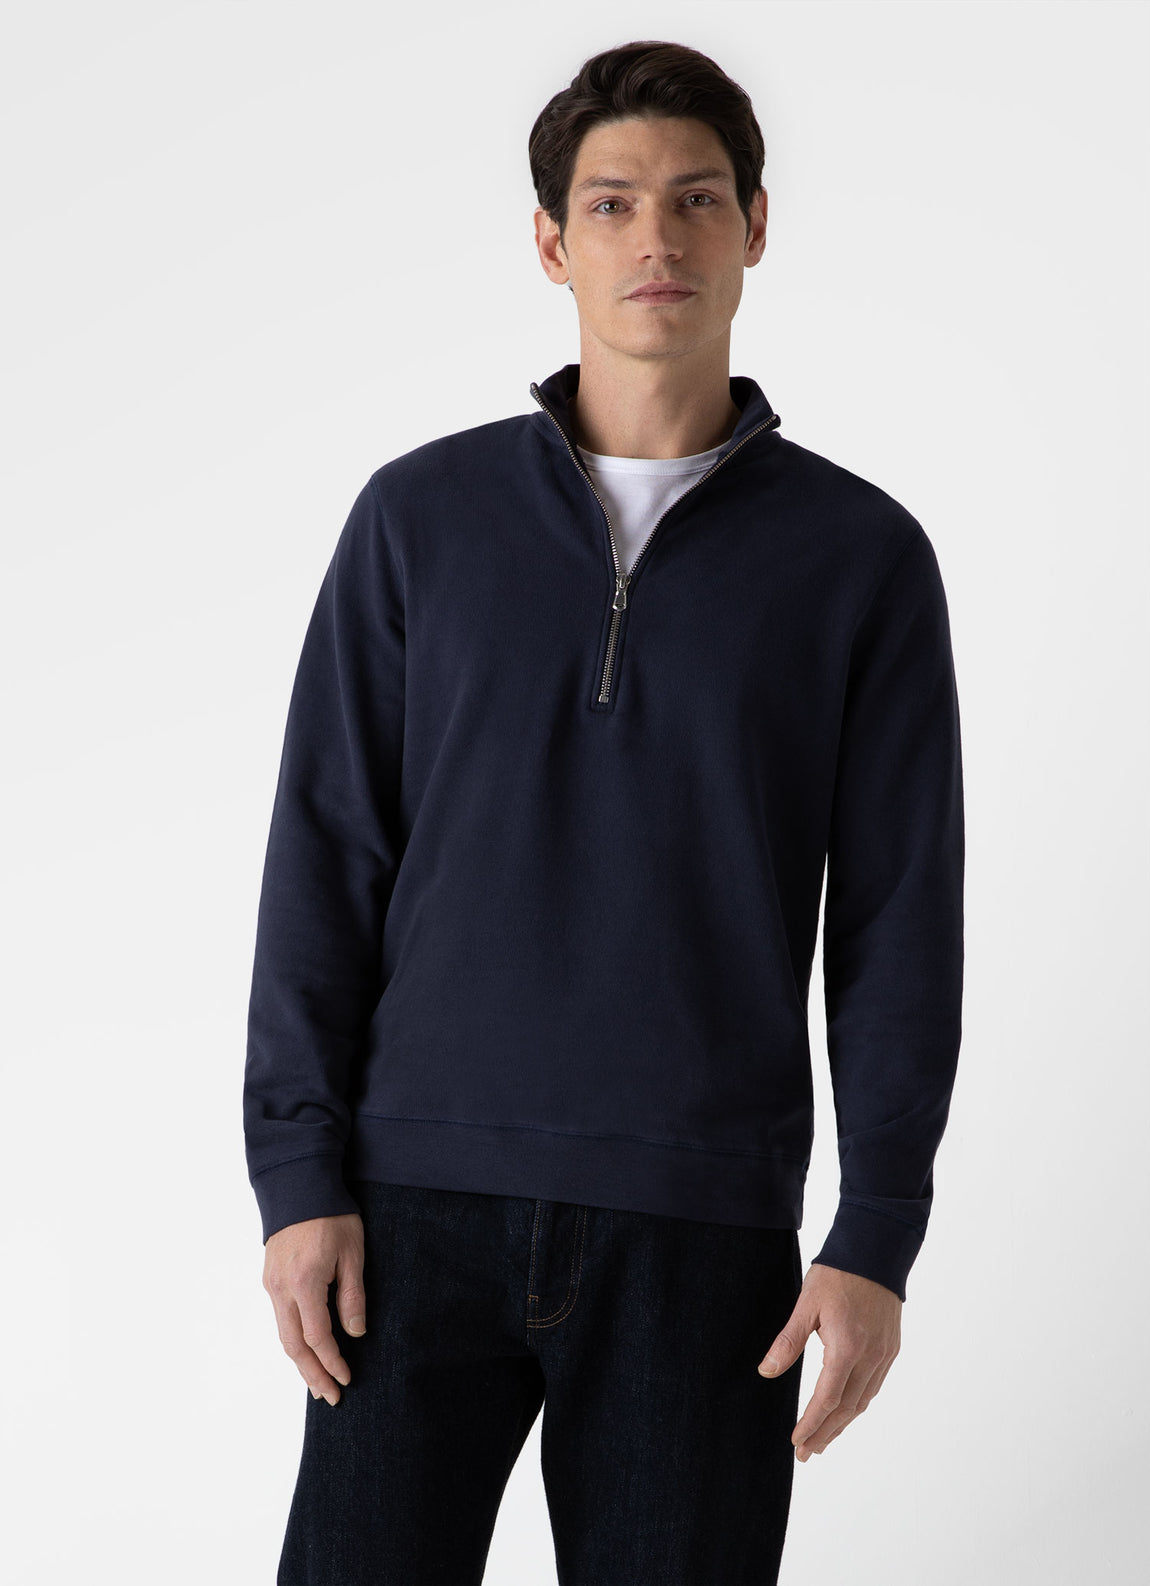 Men's Half Zip Loopback Sweatshirt in Navy | Sunspel